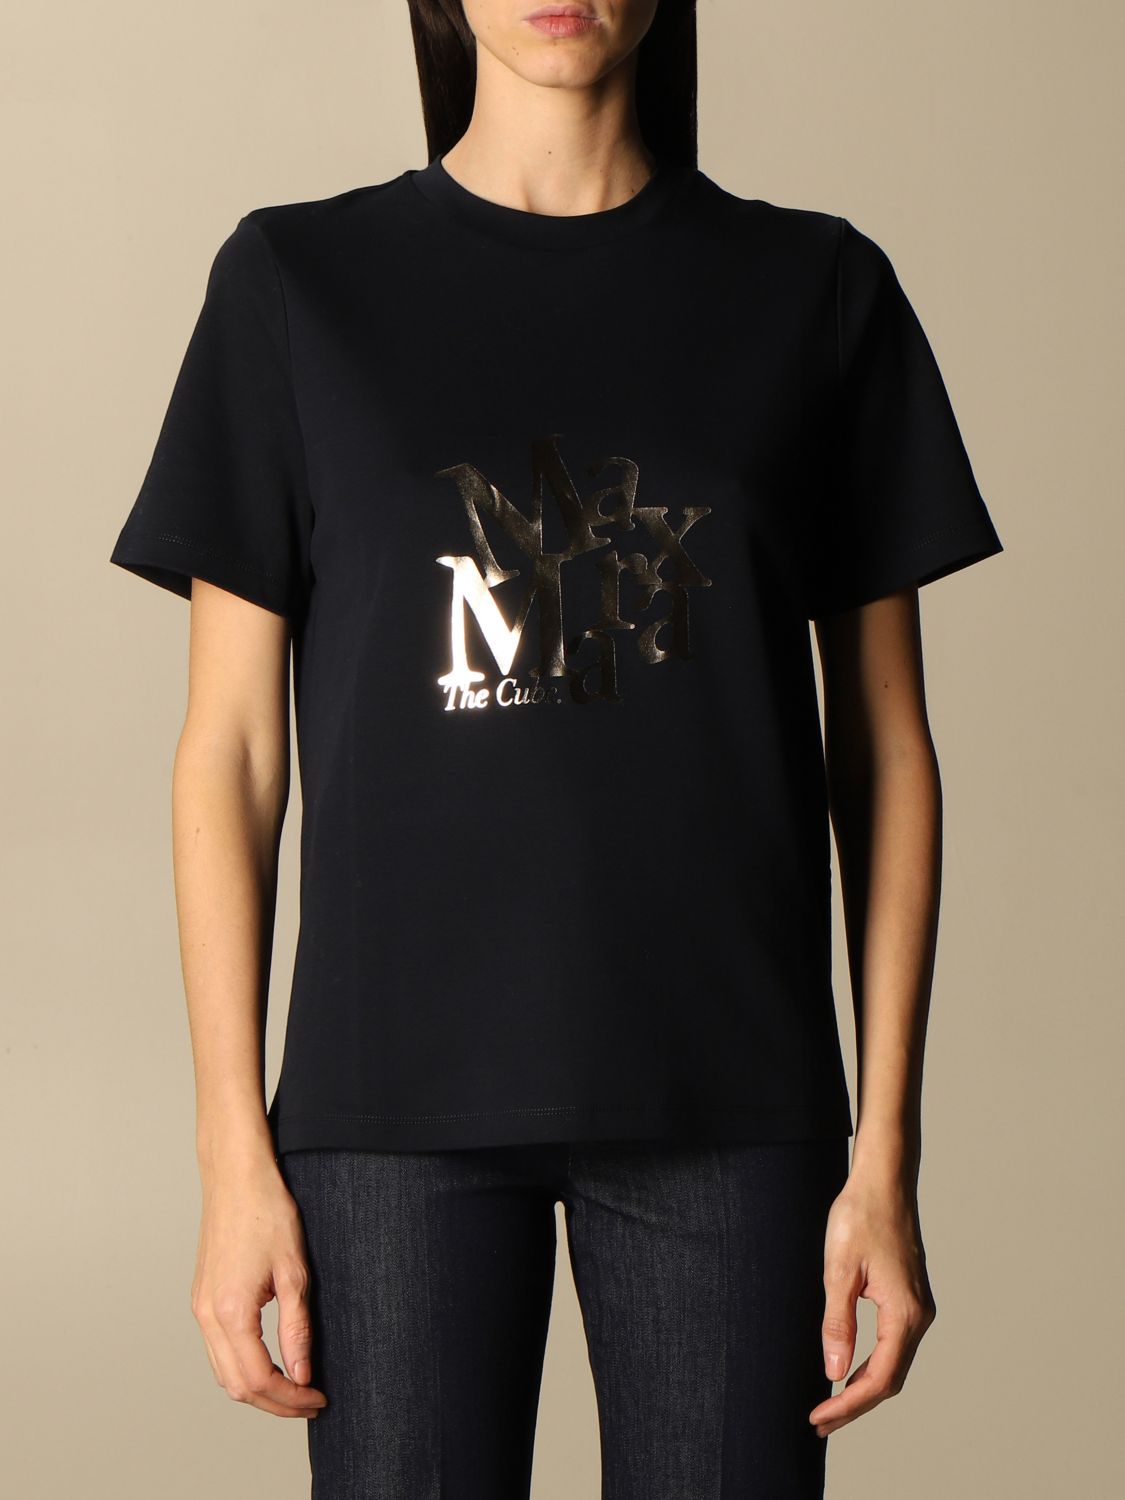 Saletta S Max Mara t-shirt in cotton with logo | T-Shirt S Max Mara ...